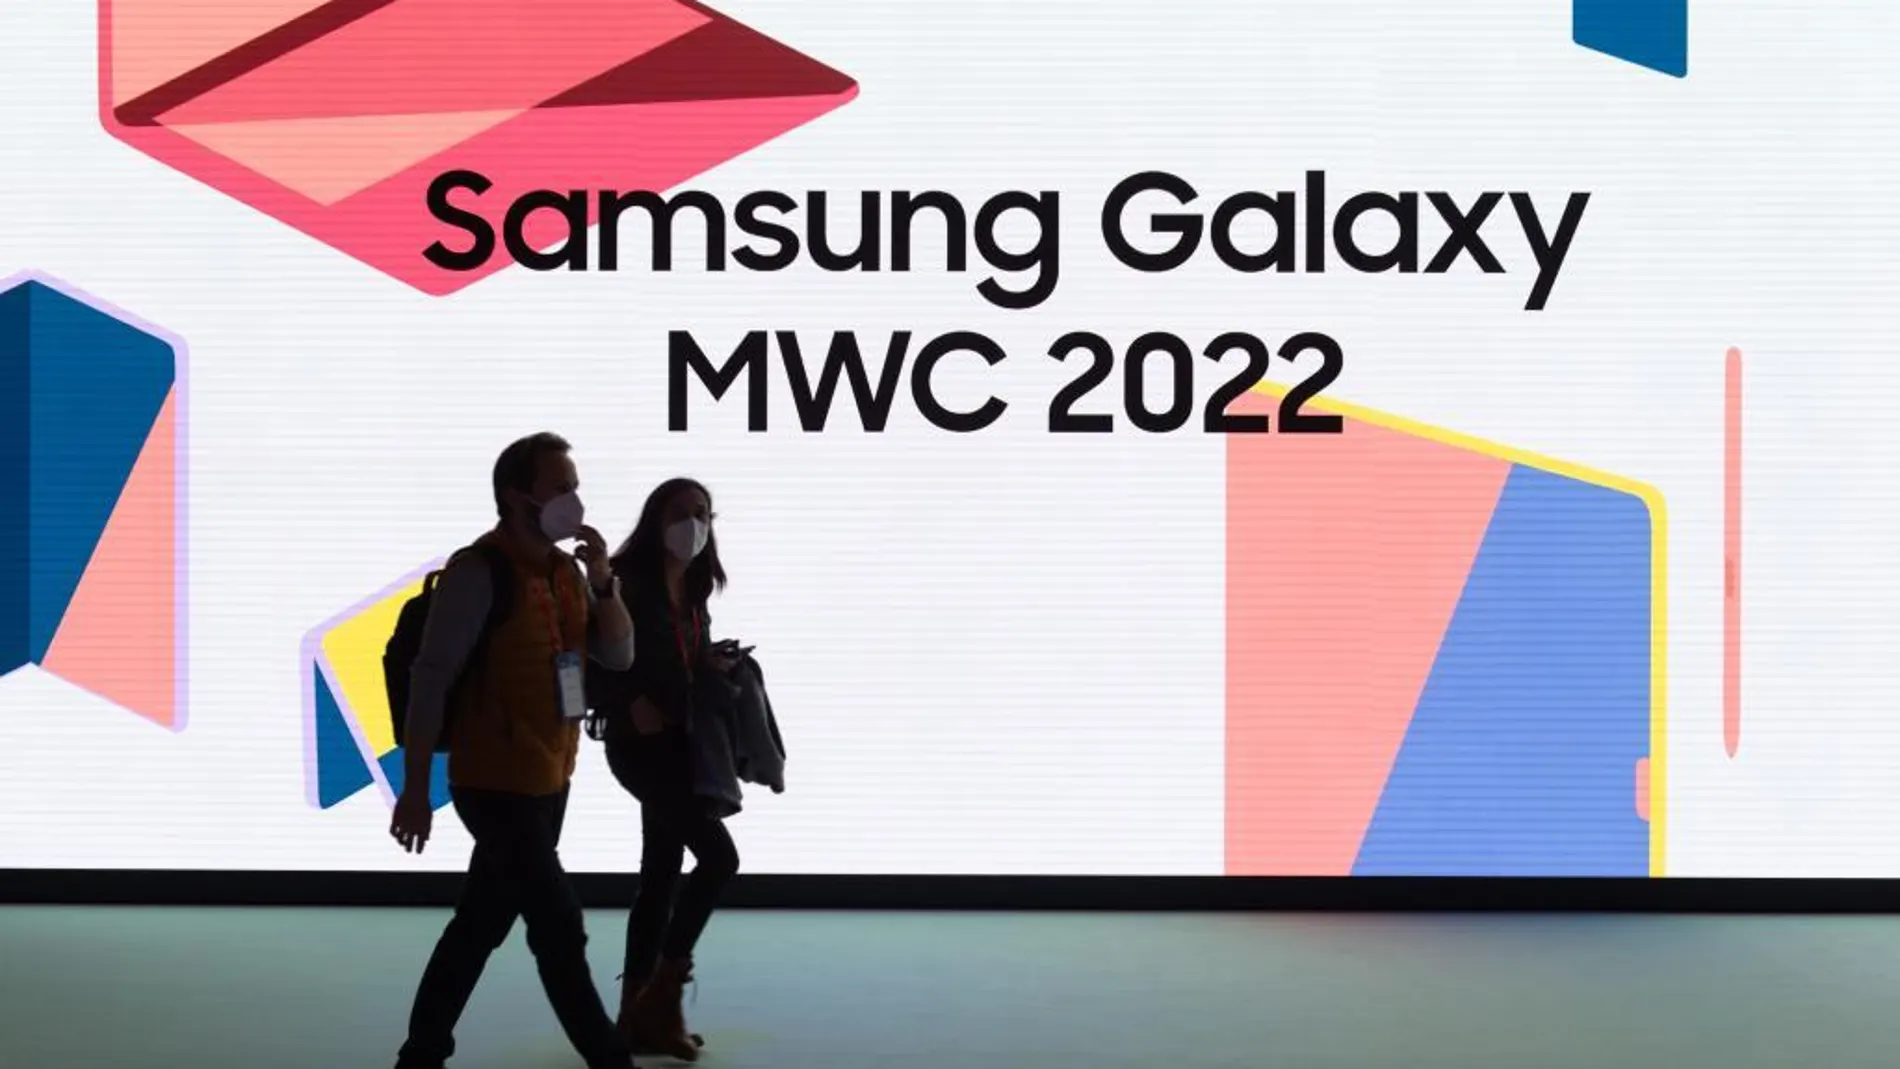 Personas caminan frente al pabellón de Samsung en el Mobile World Congress (MWC), en Barcelona, España, el 2 de marzo de 2022. La edición 2022 del MWC abrió sus puertas el 28 de febrero, para un evento de cuatro días que se espera acoja entre 40.000 y 60.000 personas